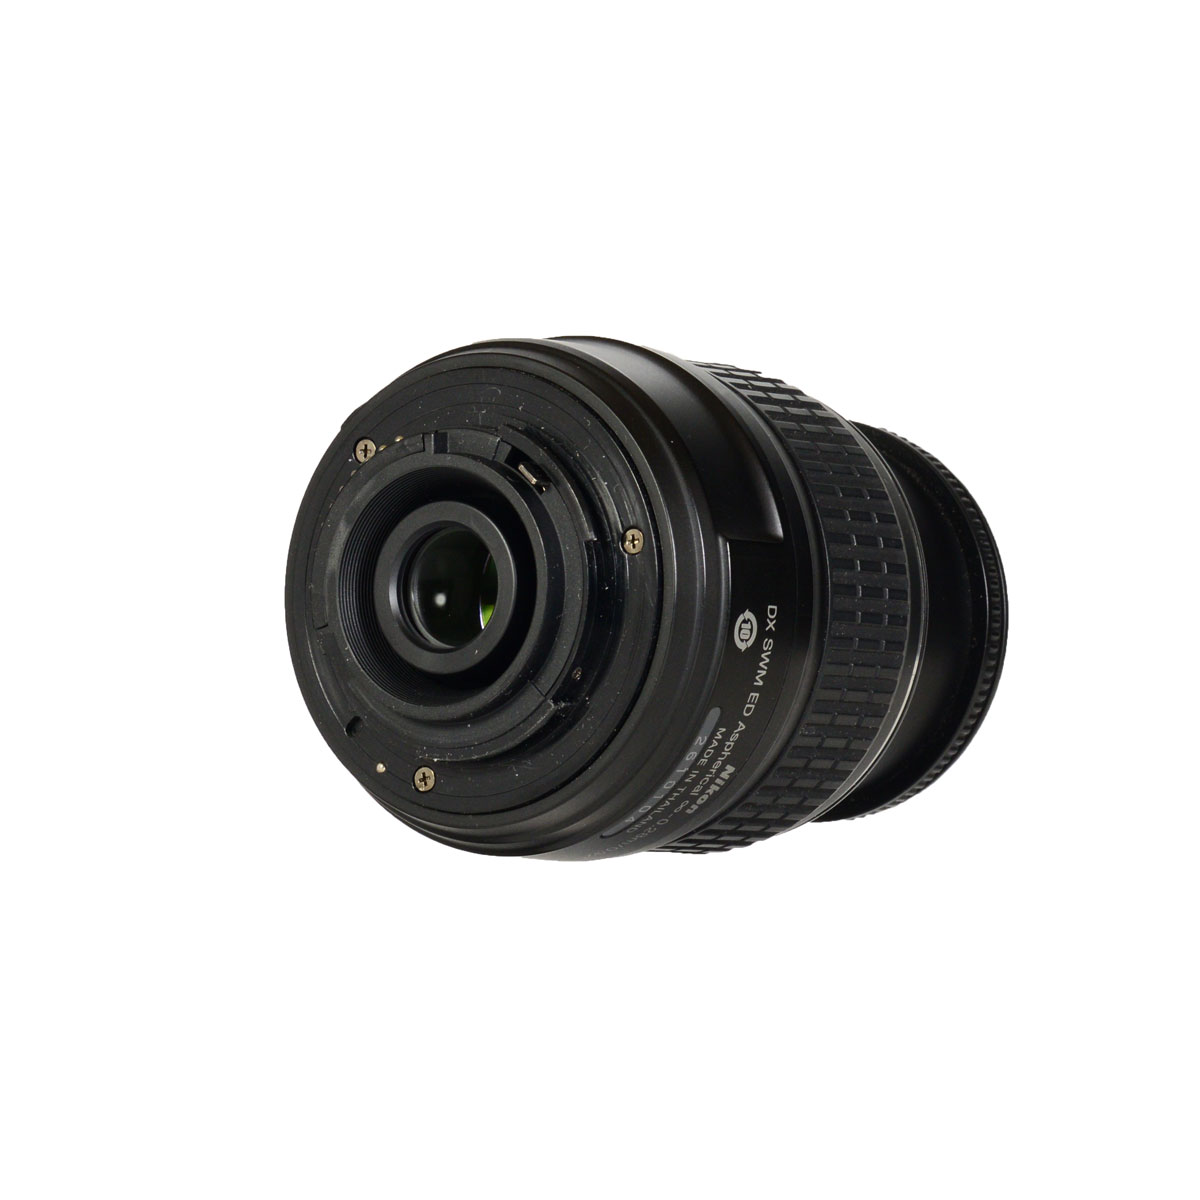 Nikon 18-55mm f/3.5-5.6G II AF-S DX б/у